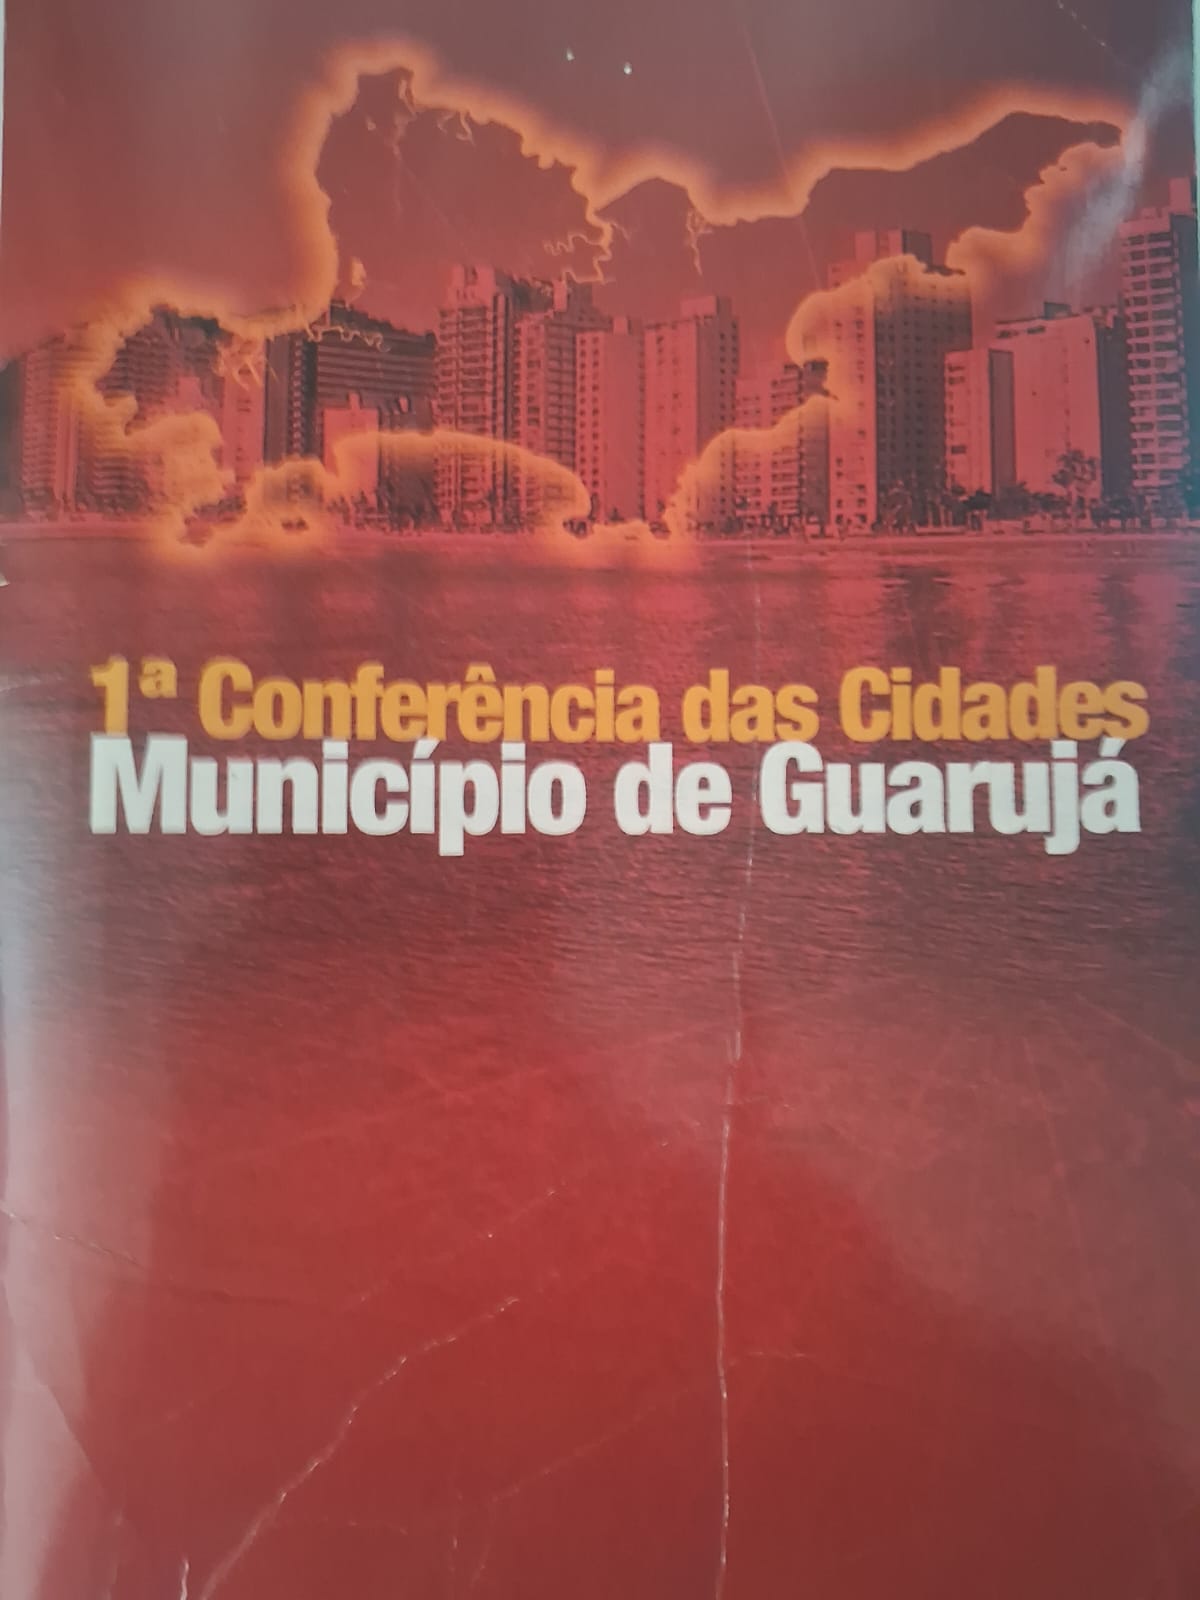 Conferência das Cidades, Município de Guarujá